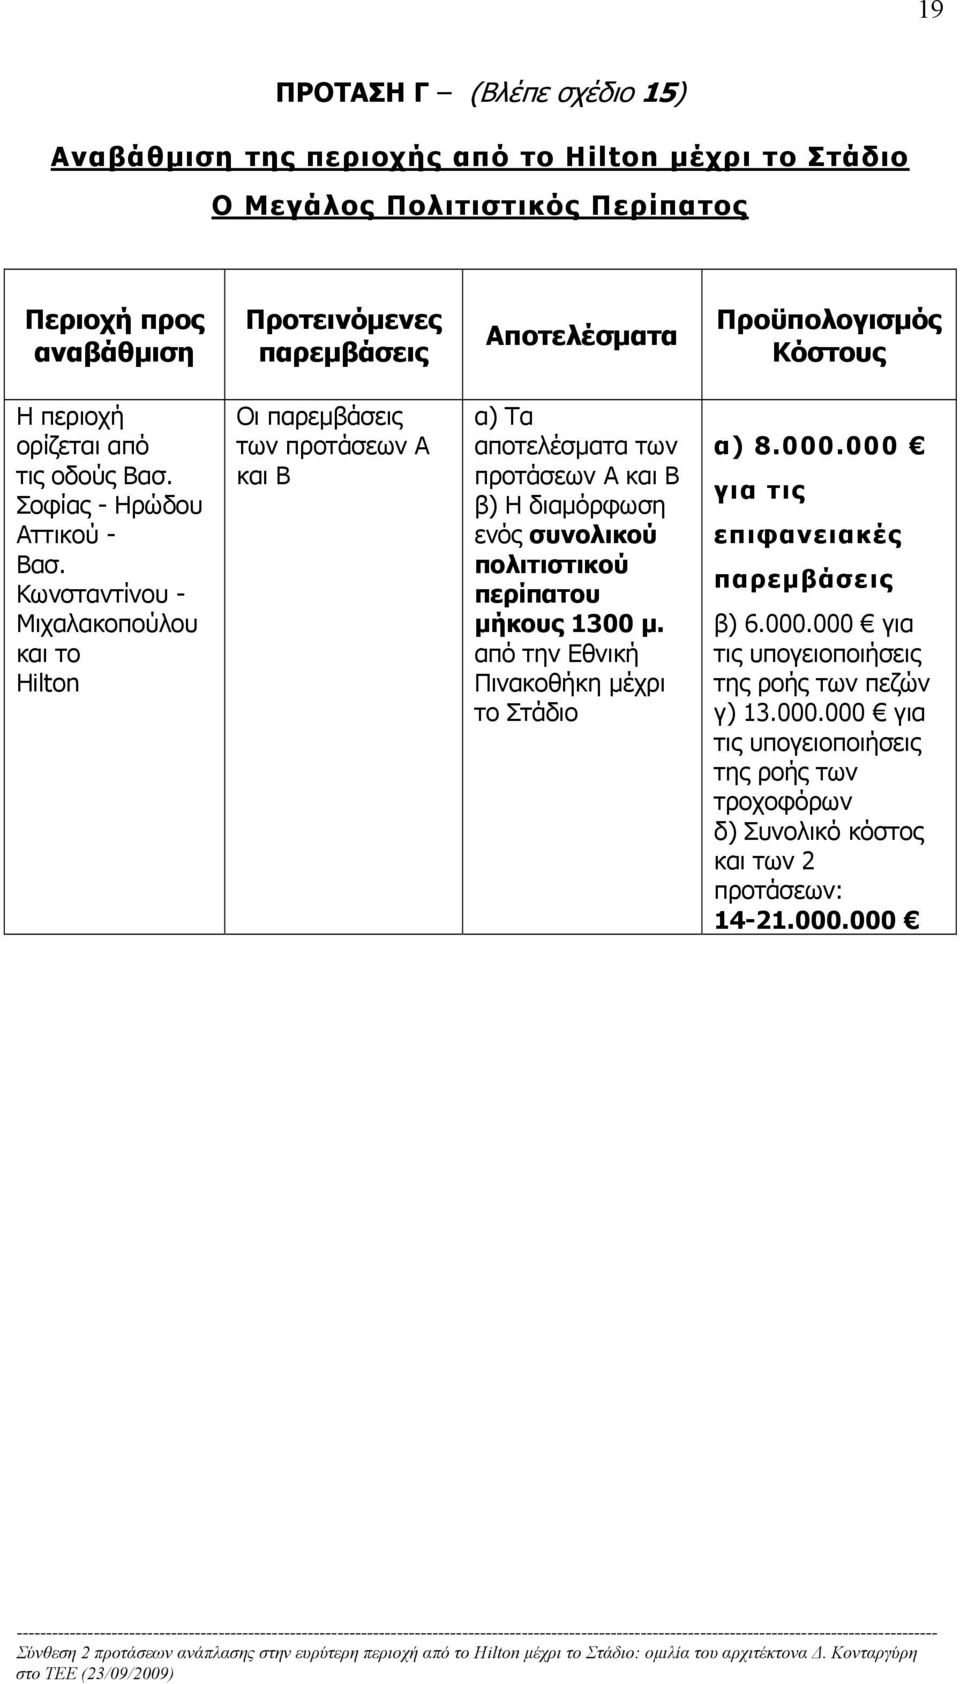 Κωνσταντίνου - Μιχαλακοπούλου και το Hilton Οι παρεμβάσεις των προτάσεων Α και Β α) Τα αποτελέσματα των προτάσεων Α και Β β) Η διαμόρφωση ενός συνολικού πολιτιστικού περίπατου